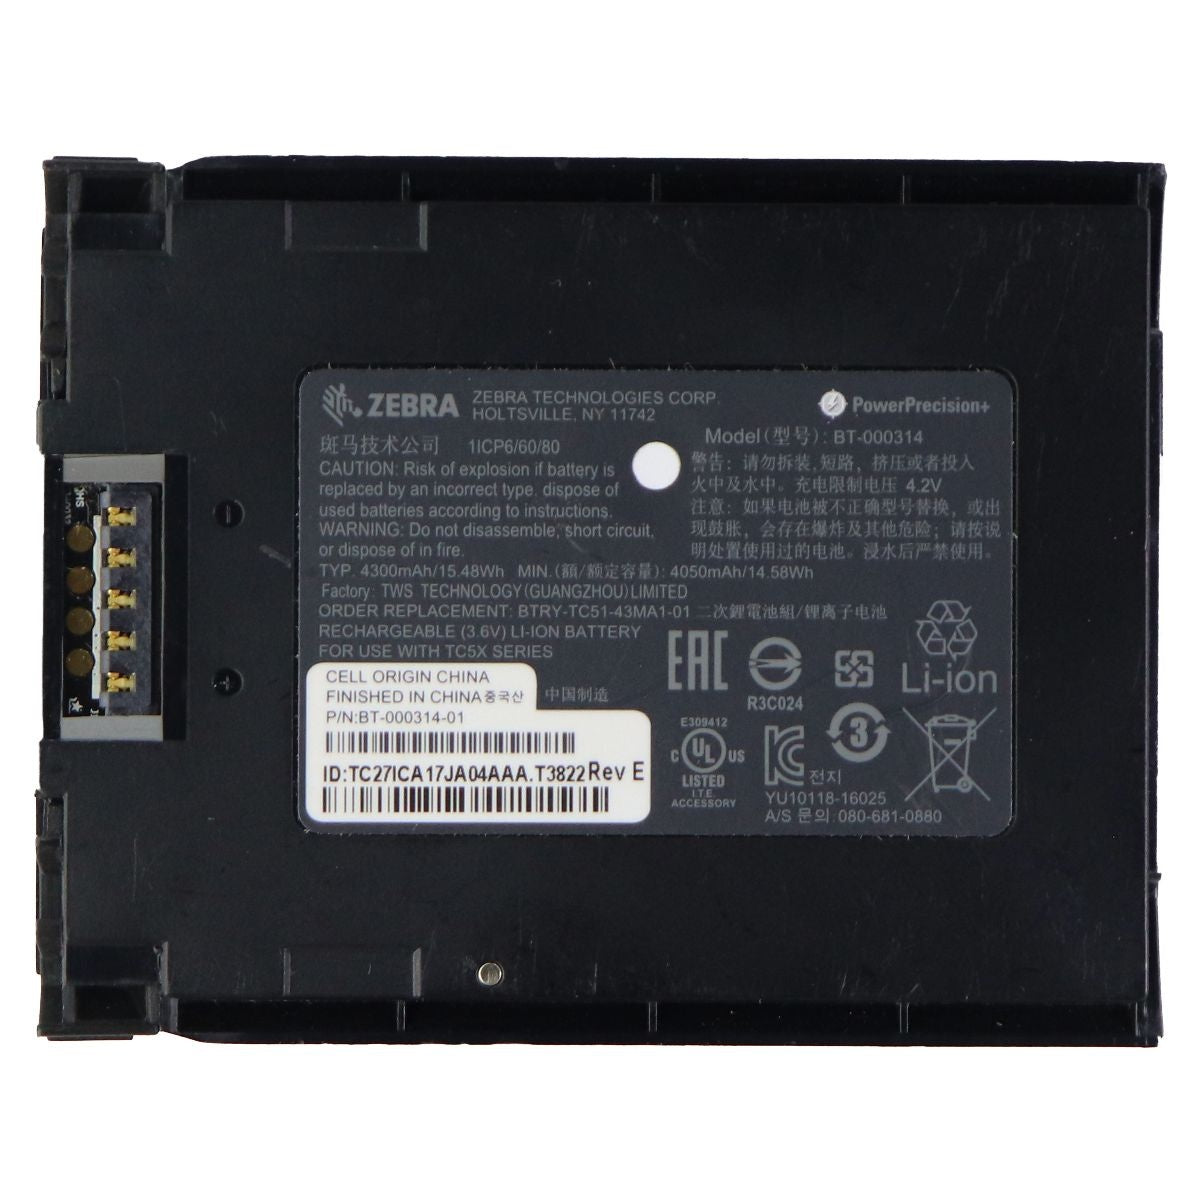 Zebra OEM Rechargeable 4.2V 4050mAh Battery (BT-000314) Cell Phone - Batteries Zebra    - Simple Cell Bulk Wholesale Pricing - USA Seller